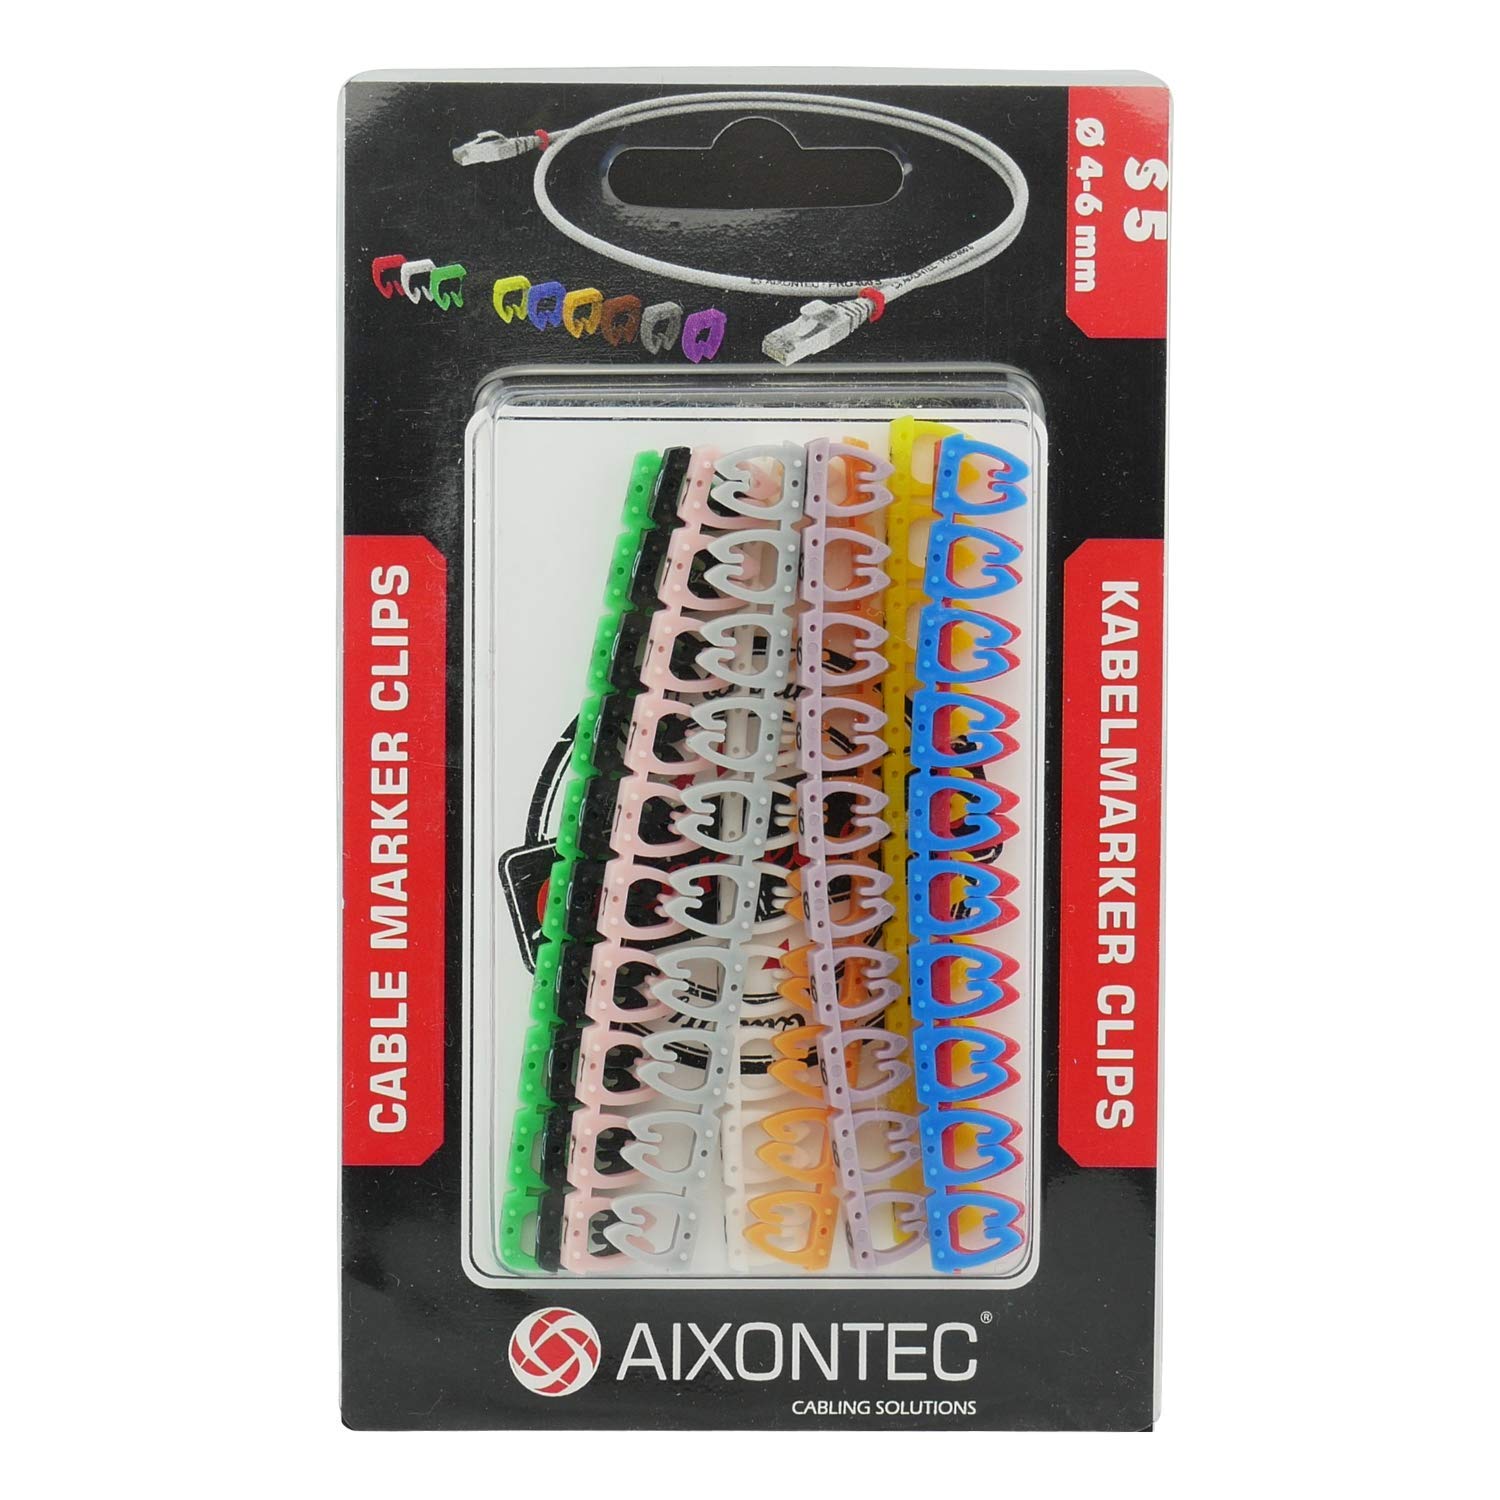 AIXONTEC 10000 Kennzeichnungsclip Fabrcodierung Ringe Clips 0 – 9 nummeriert Marker mehrfarbig bunt Kabelmarker Zahlen Kabelclpis Kabelkennzeichnung bis Ø 4-6 mm Kabel